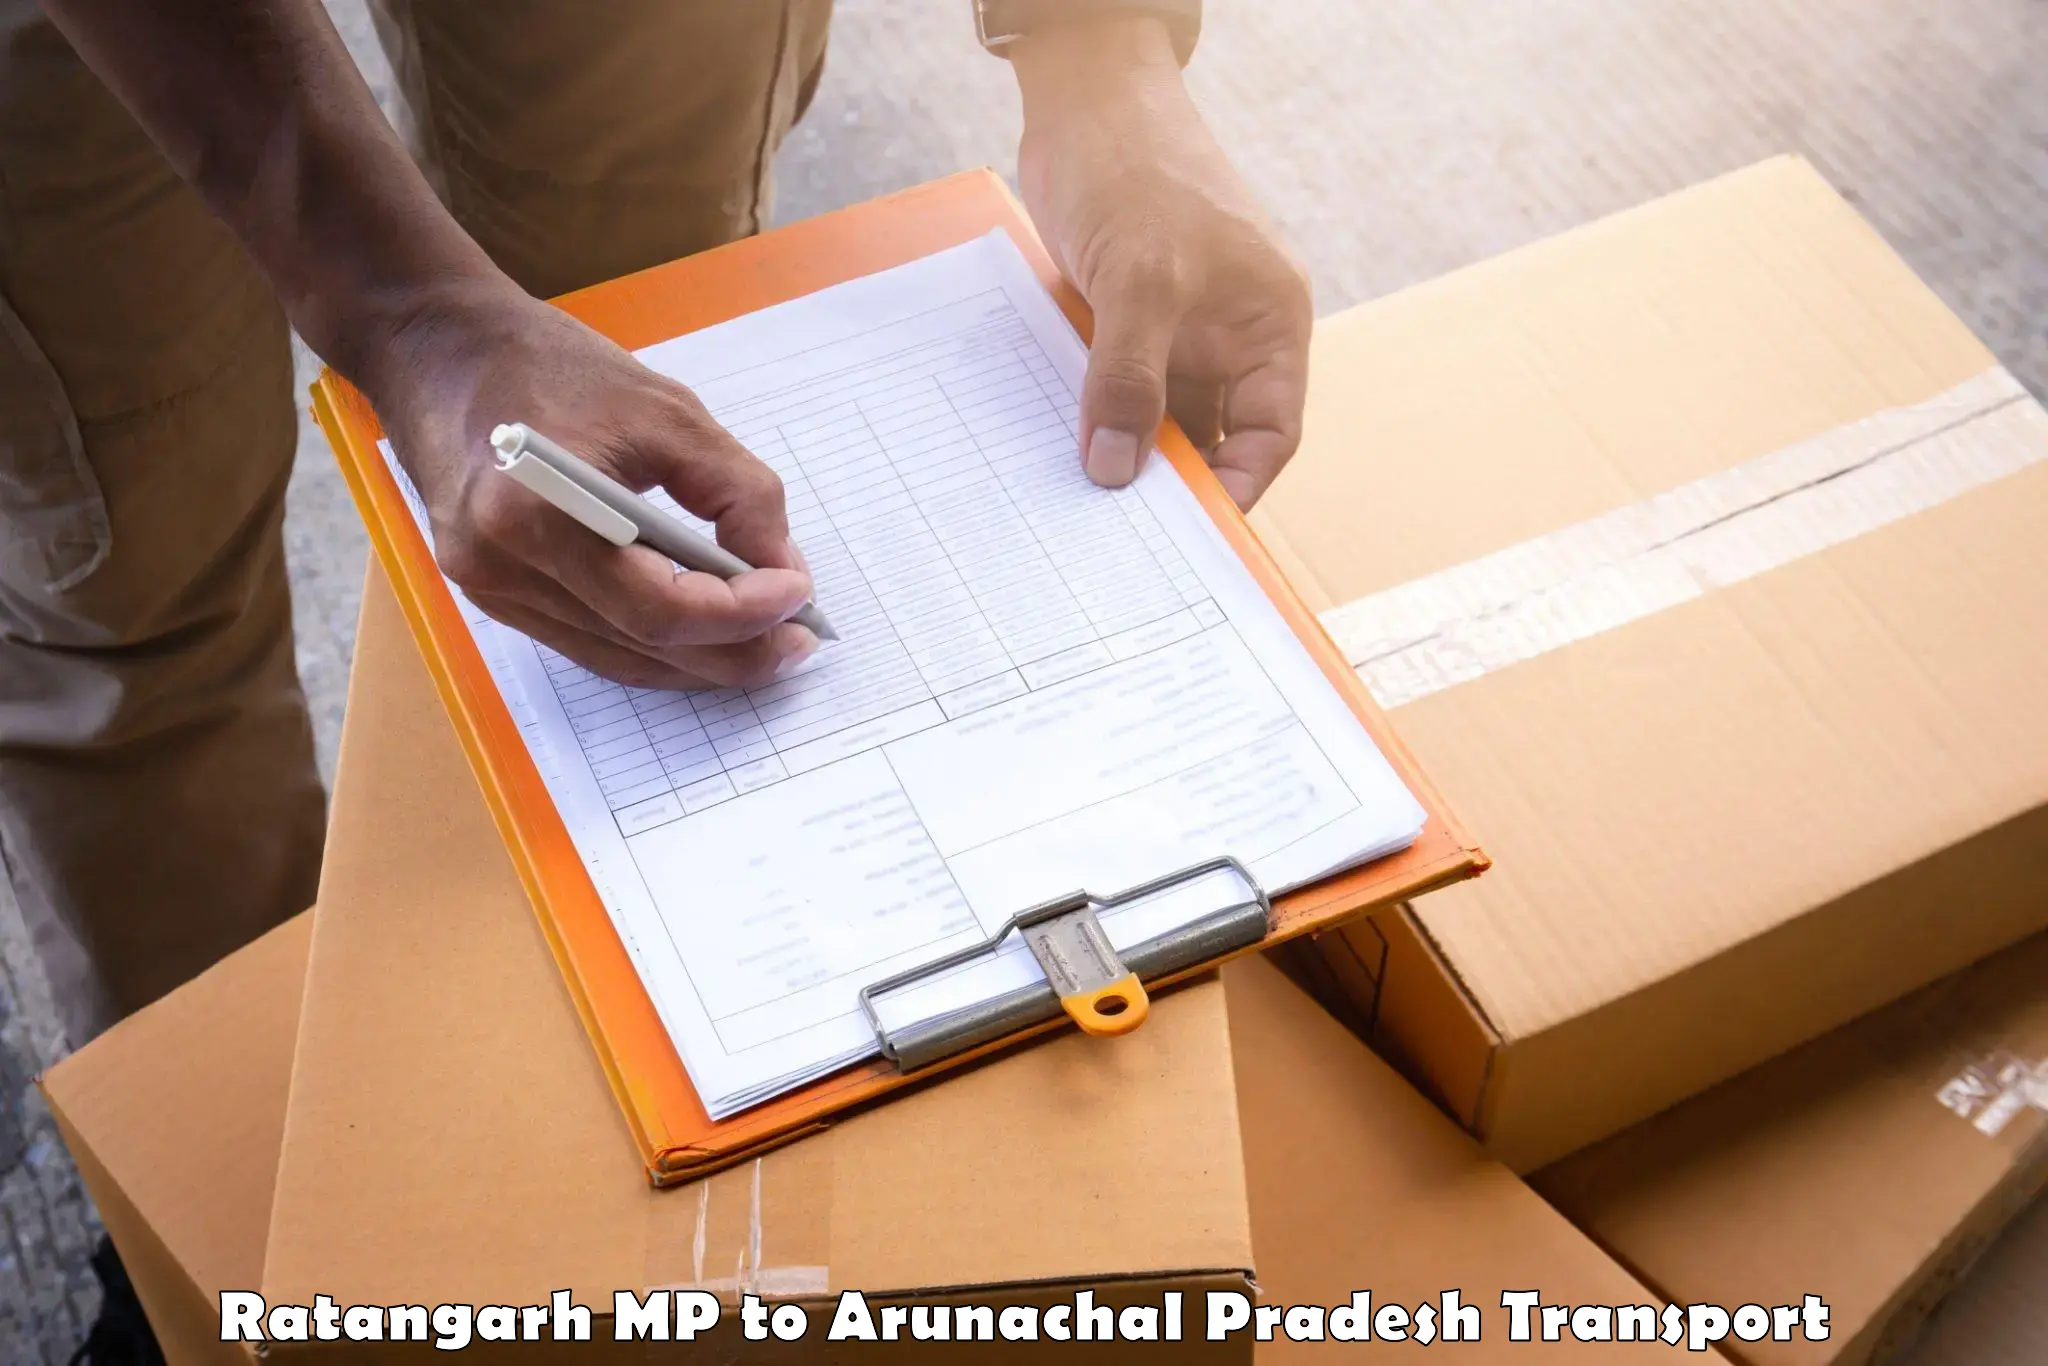 Bike shifting service Ratangarh MP to Arunachal Pradesh